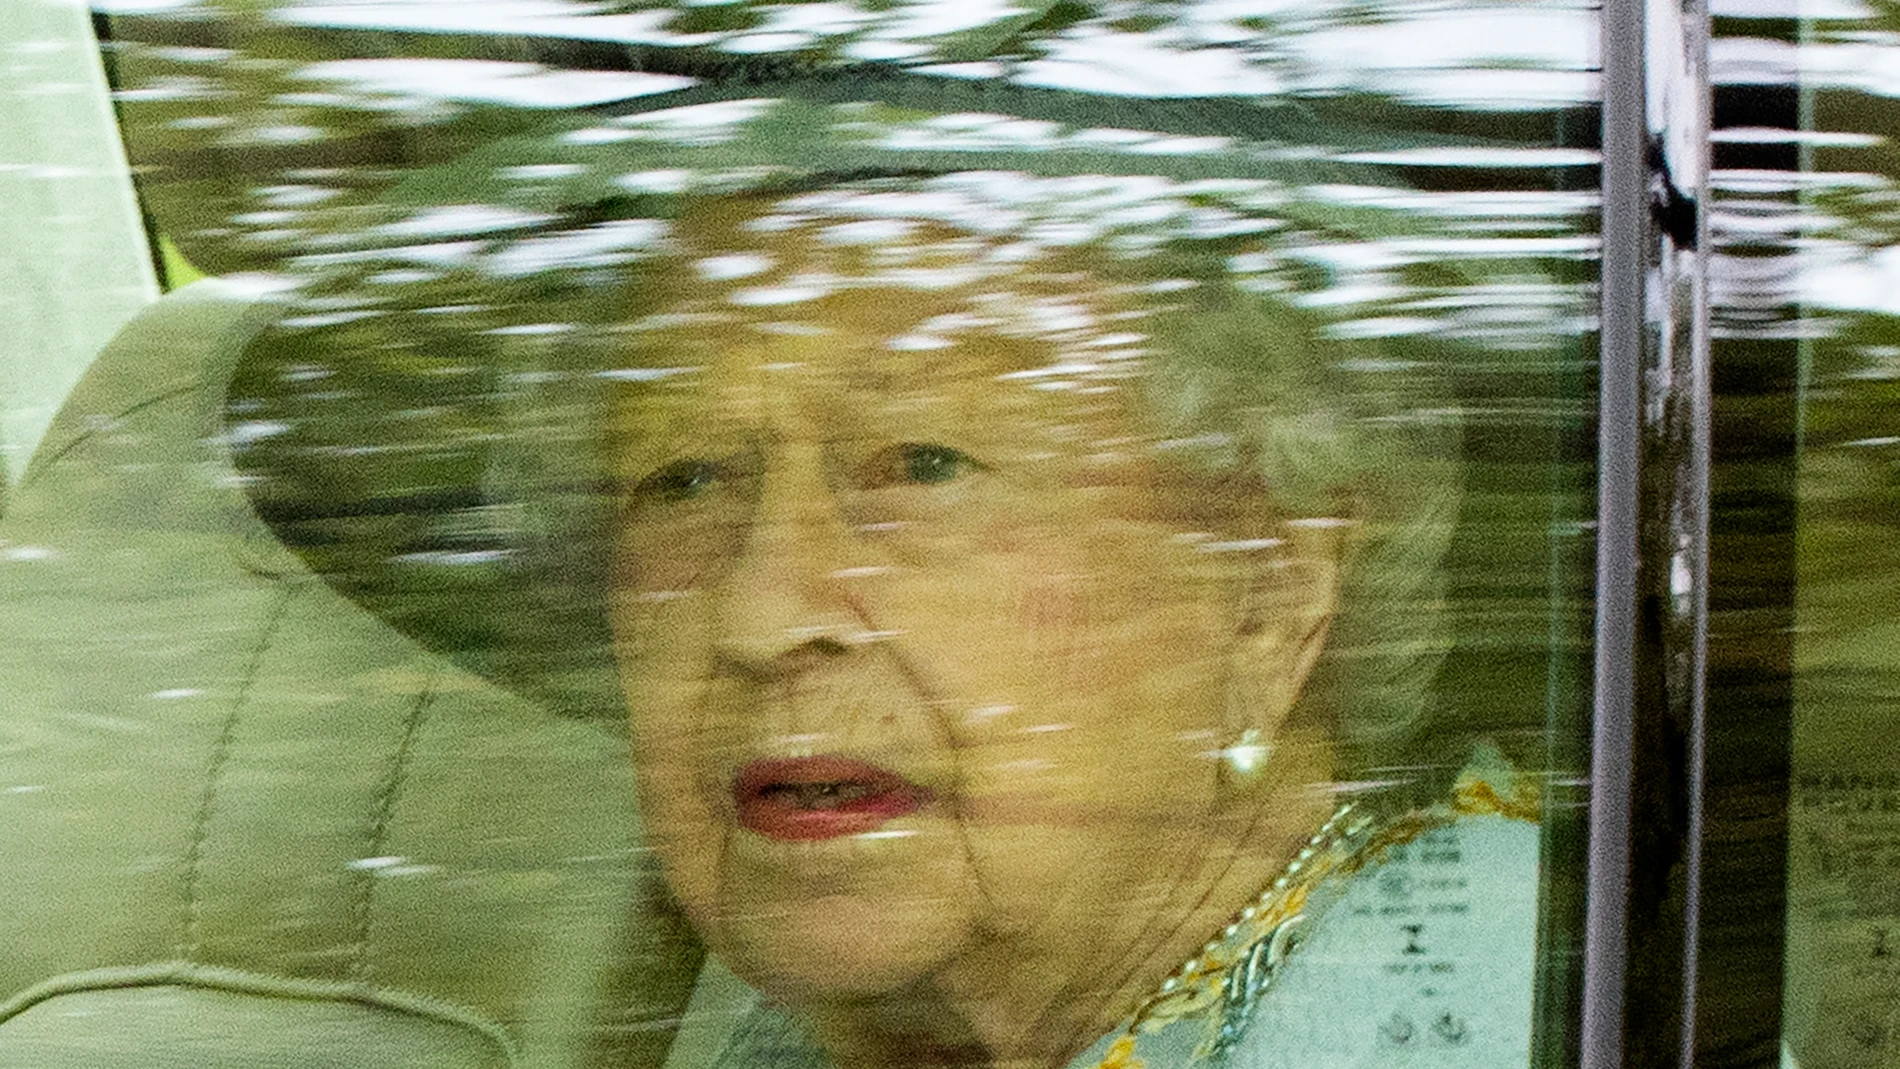 La reina Isabel II de Inglaterra rechaza el premio 'Oldie of the Year' porque se siente joven